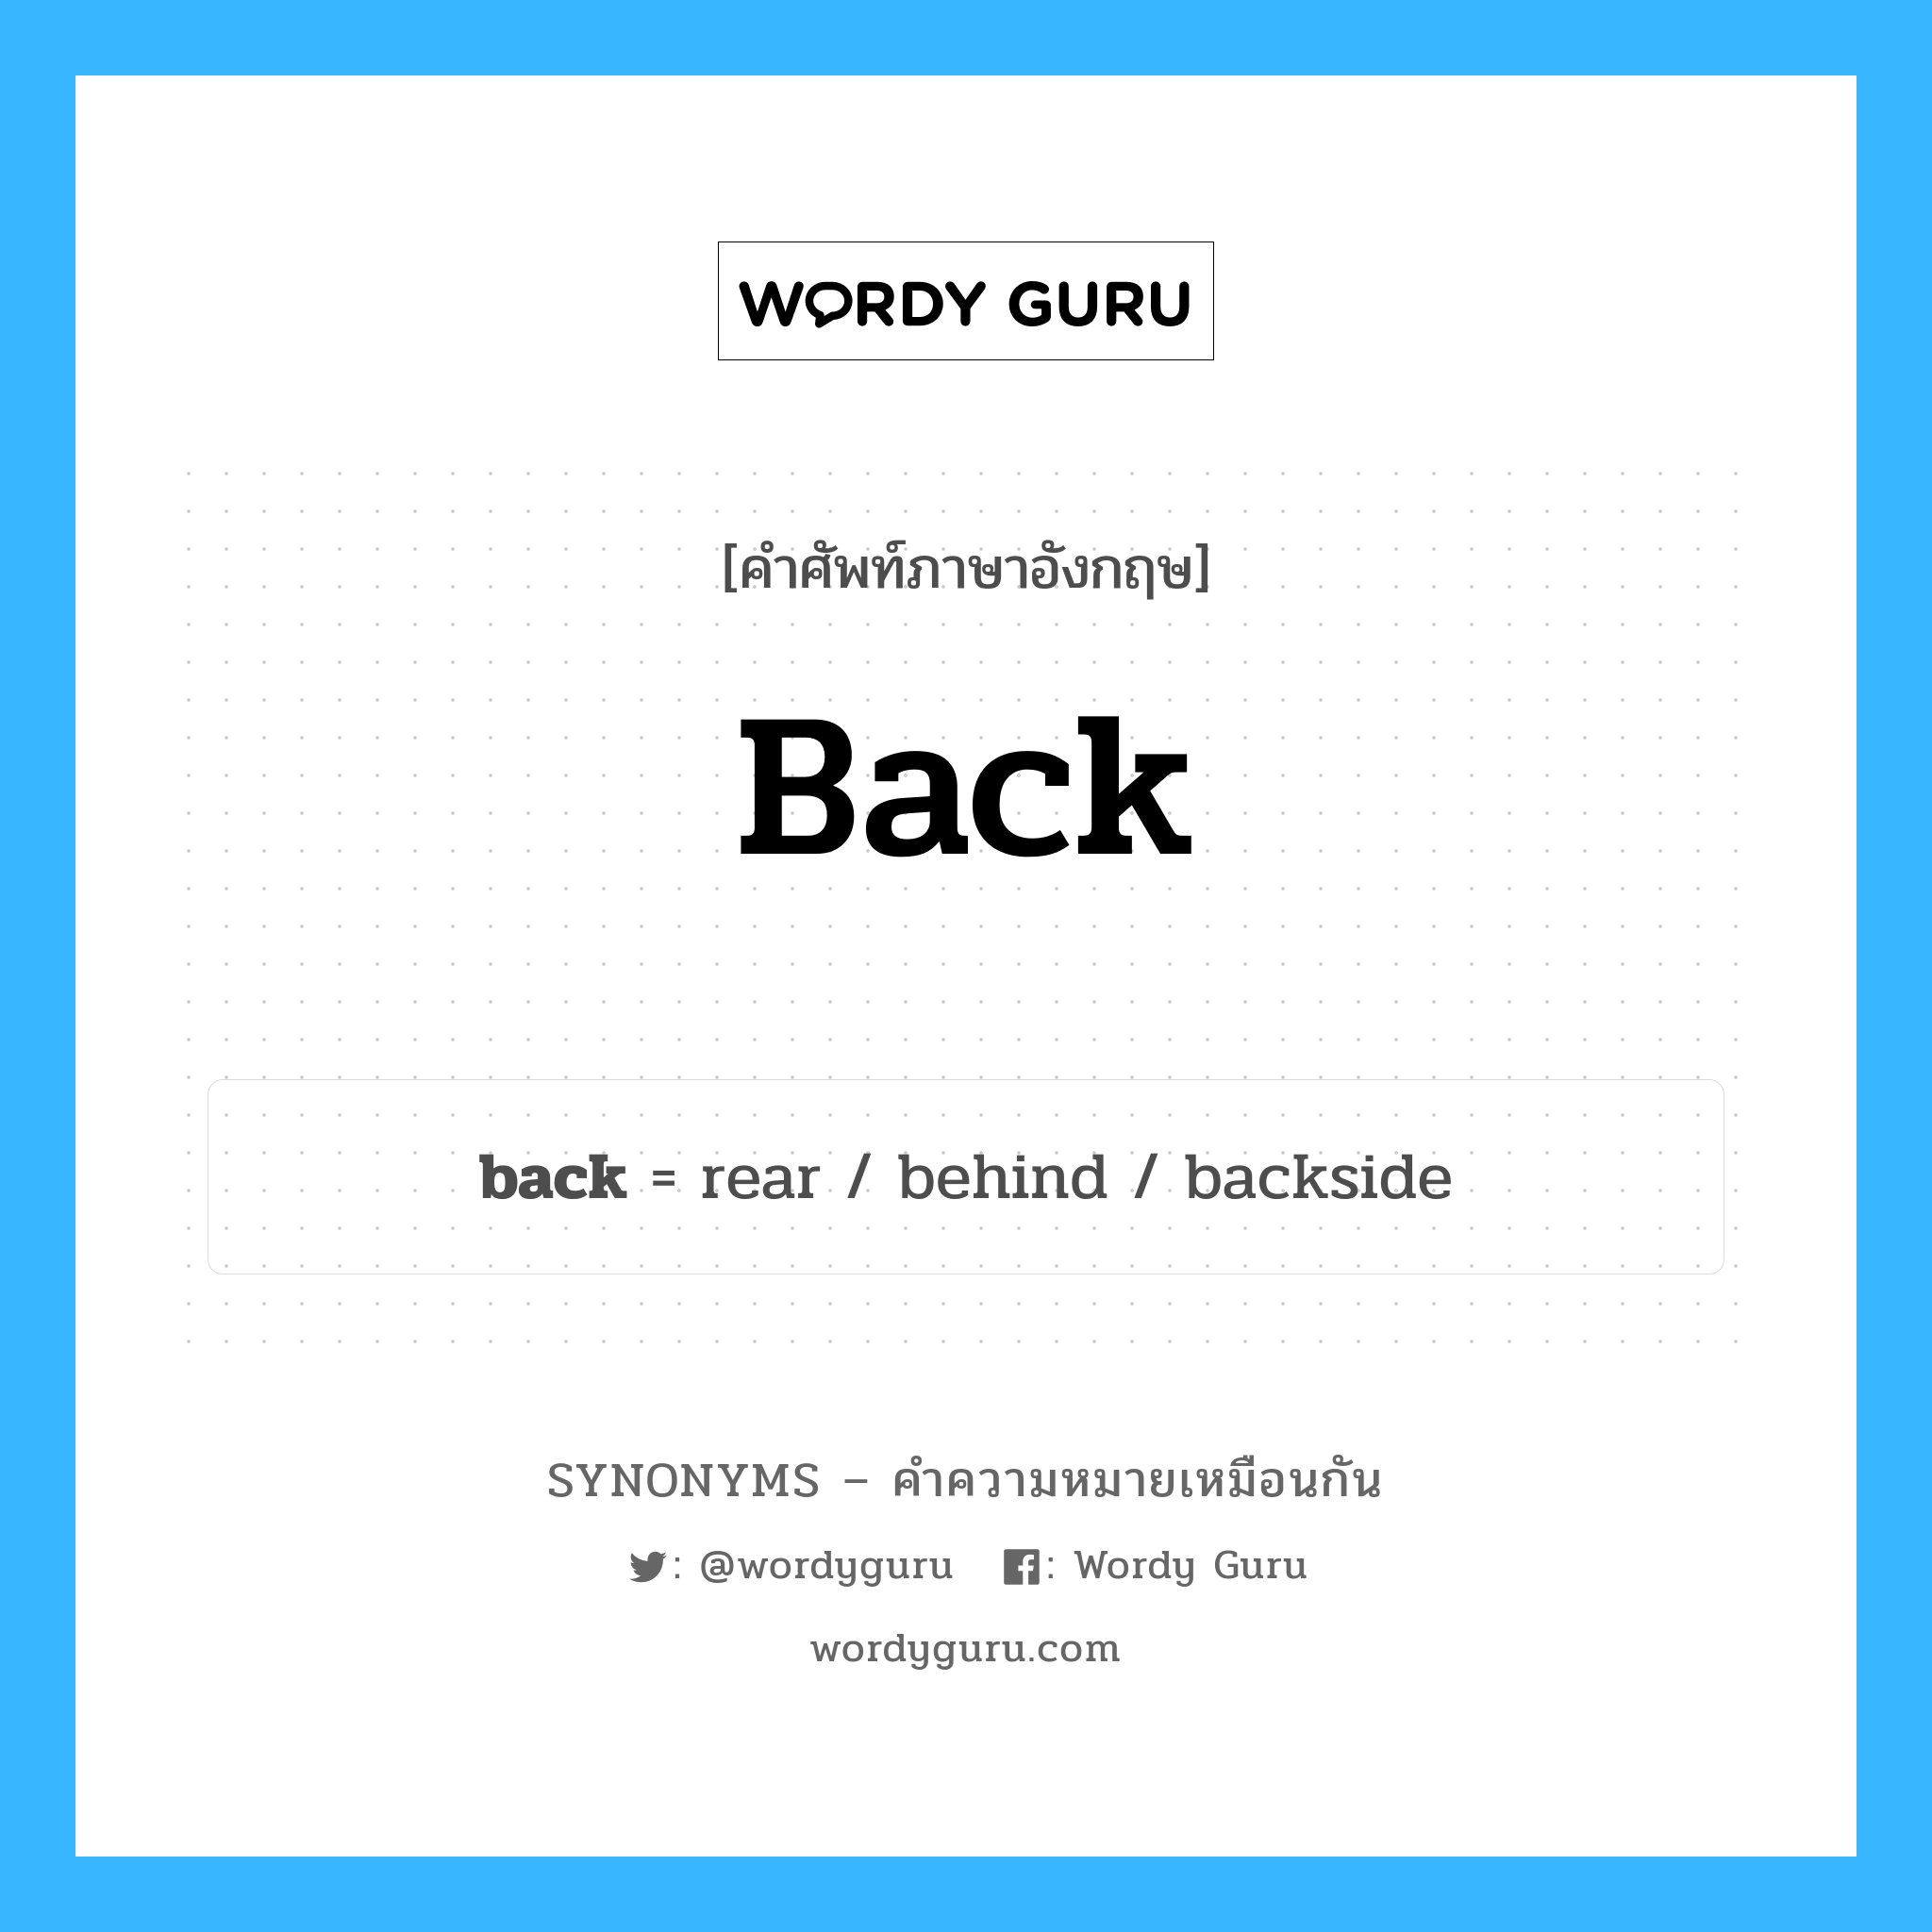 back เป็นหนึ่งใน behind และมีคำอื่น ๆ อีกดังนี้, คำศัพท์ภาษาอังกฤษ back ความหมายคล้ายกันกับ behind แปลว่า เบื้องหลัง หมวด behind